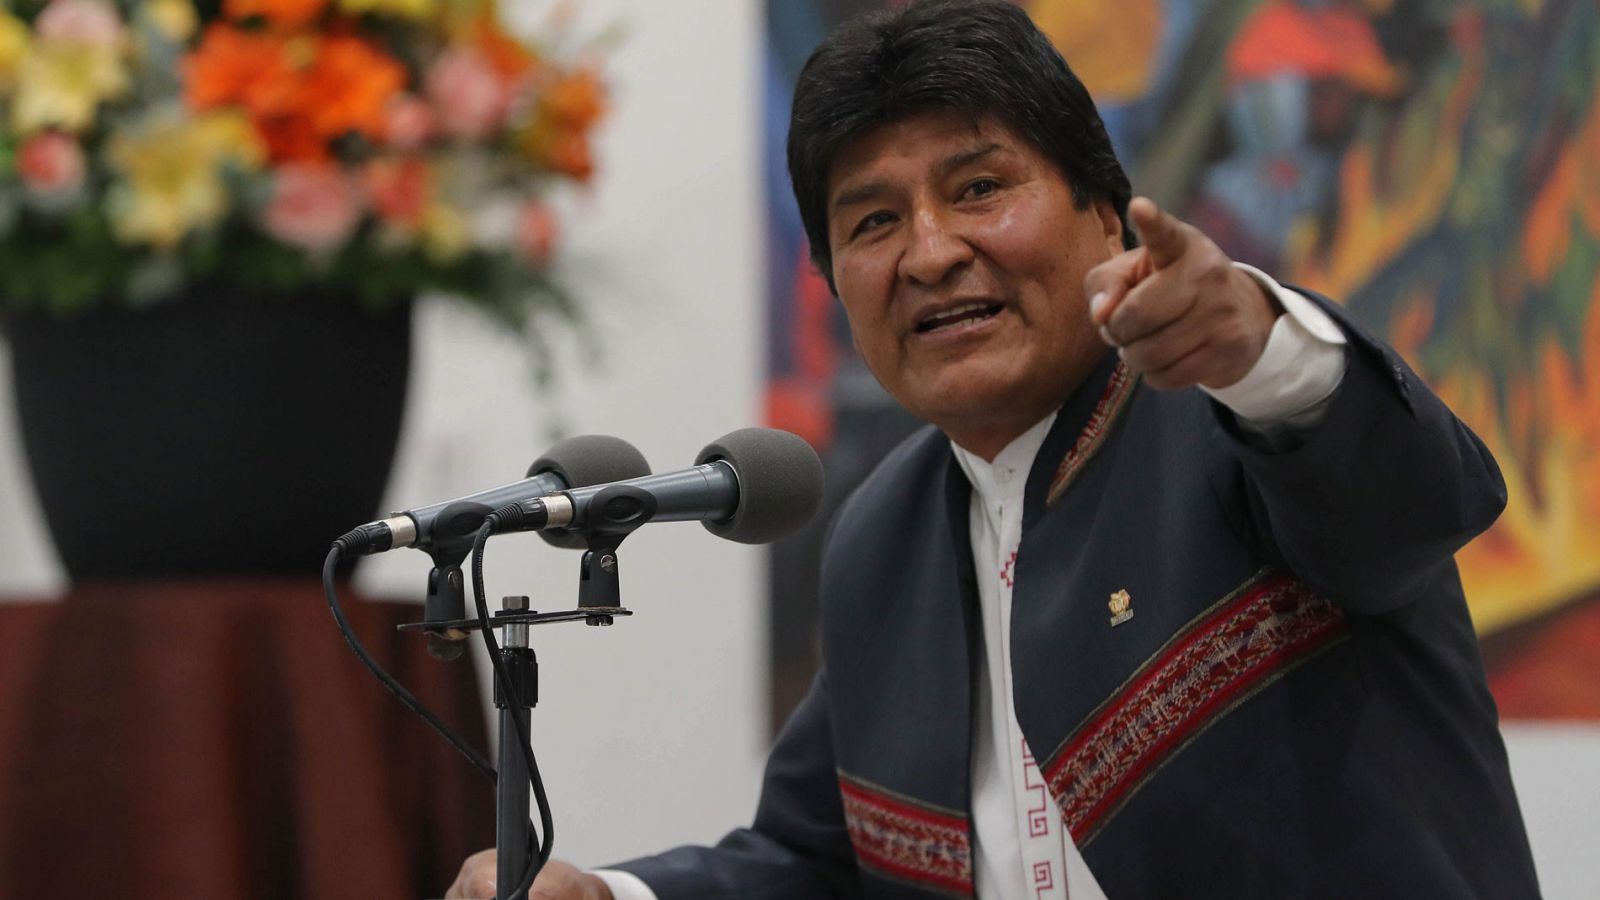 Elecciones Bolivia | Evo Morales gana oficialmente las elecciones en Bolivia - RTVE.es